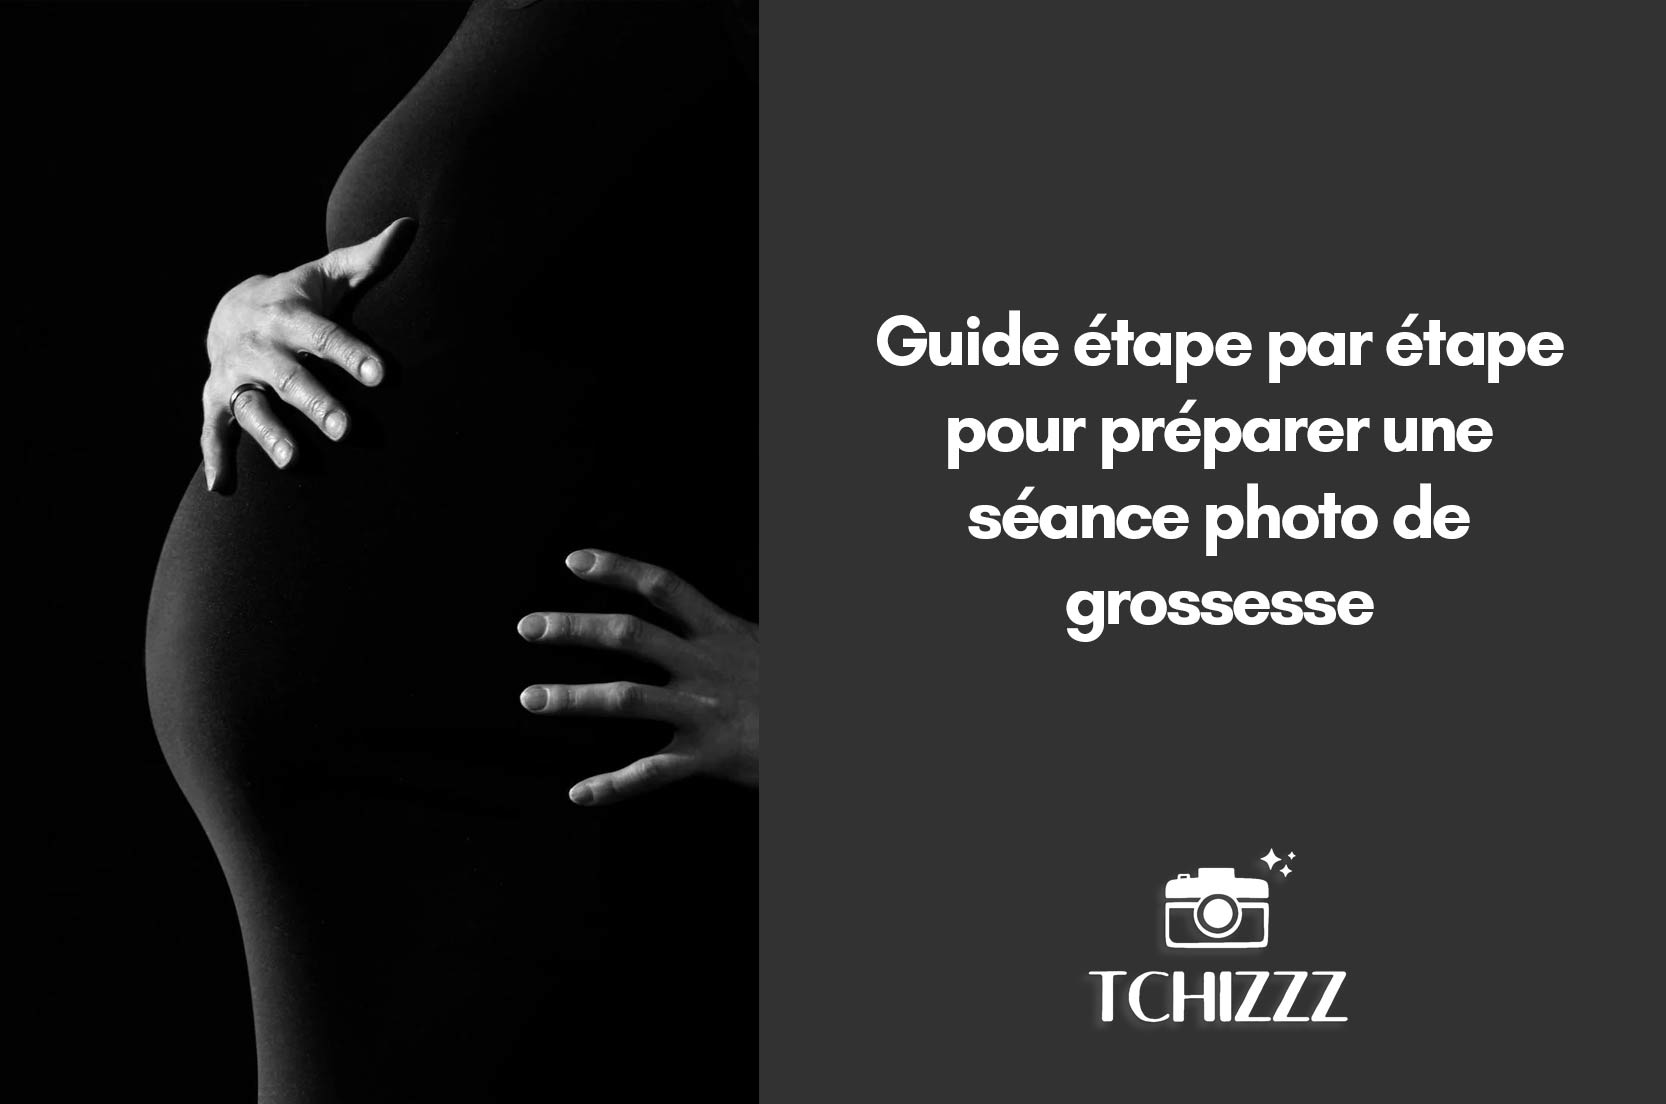 You are currently viewing Guide étape par étape pour préparer une séance photo de grossesse